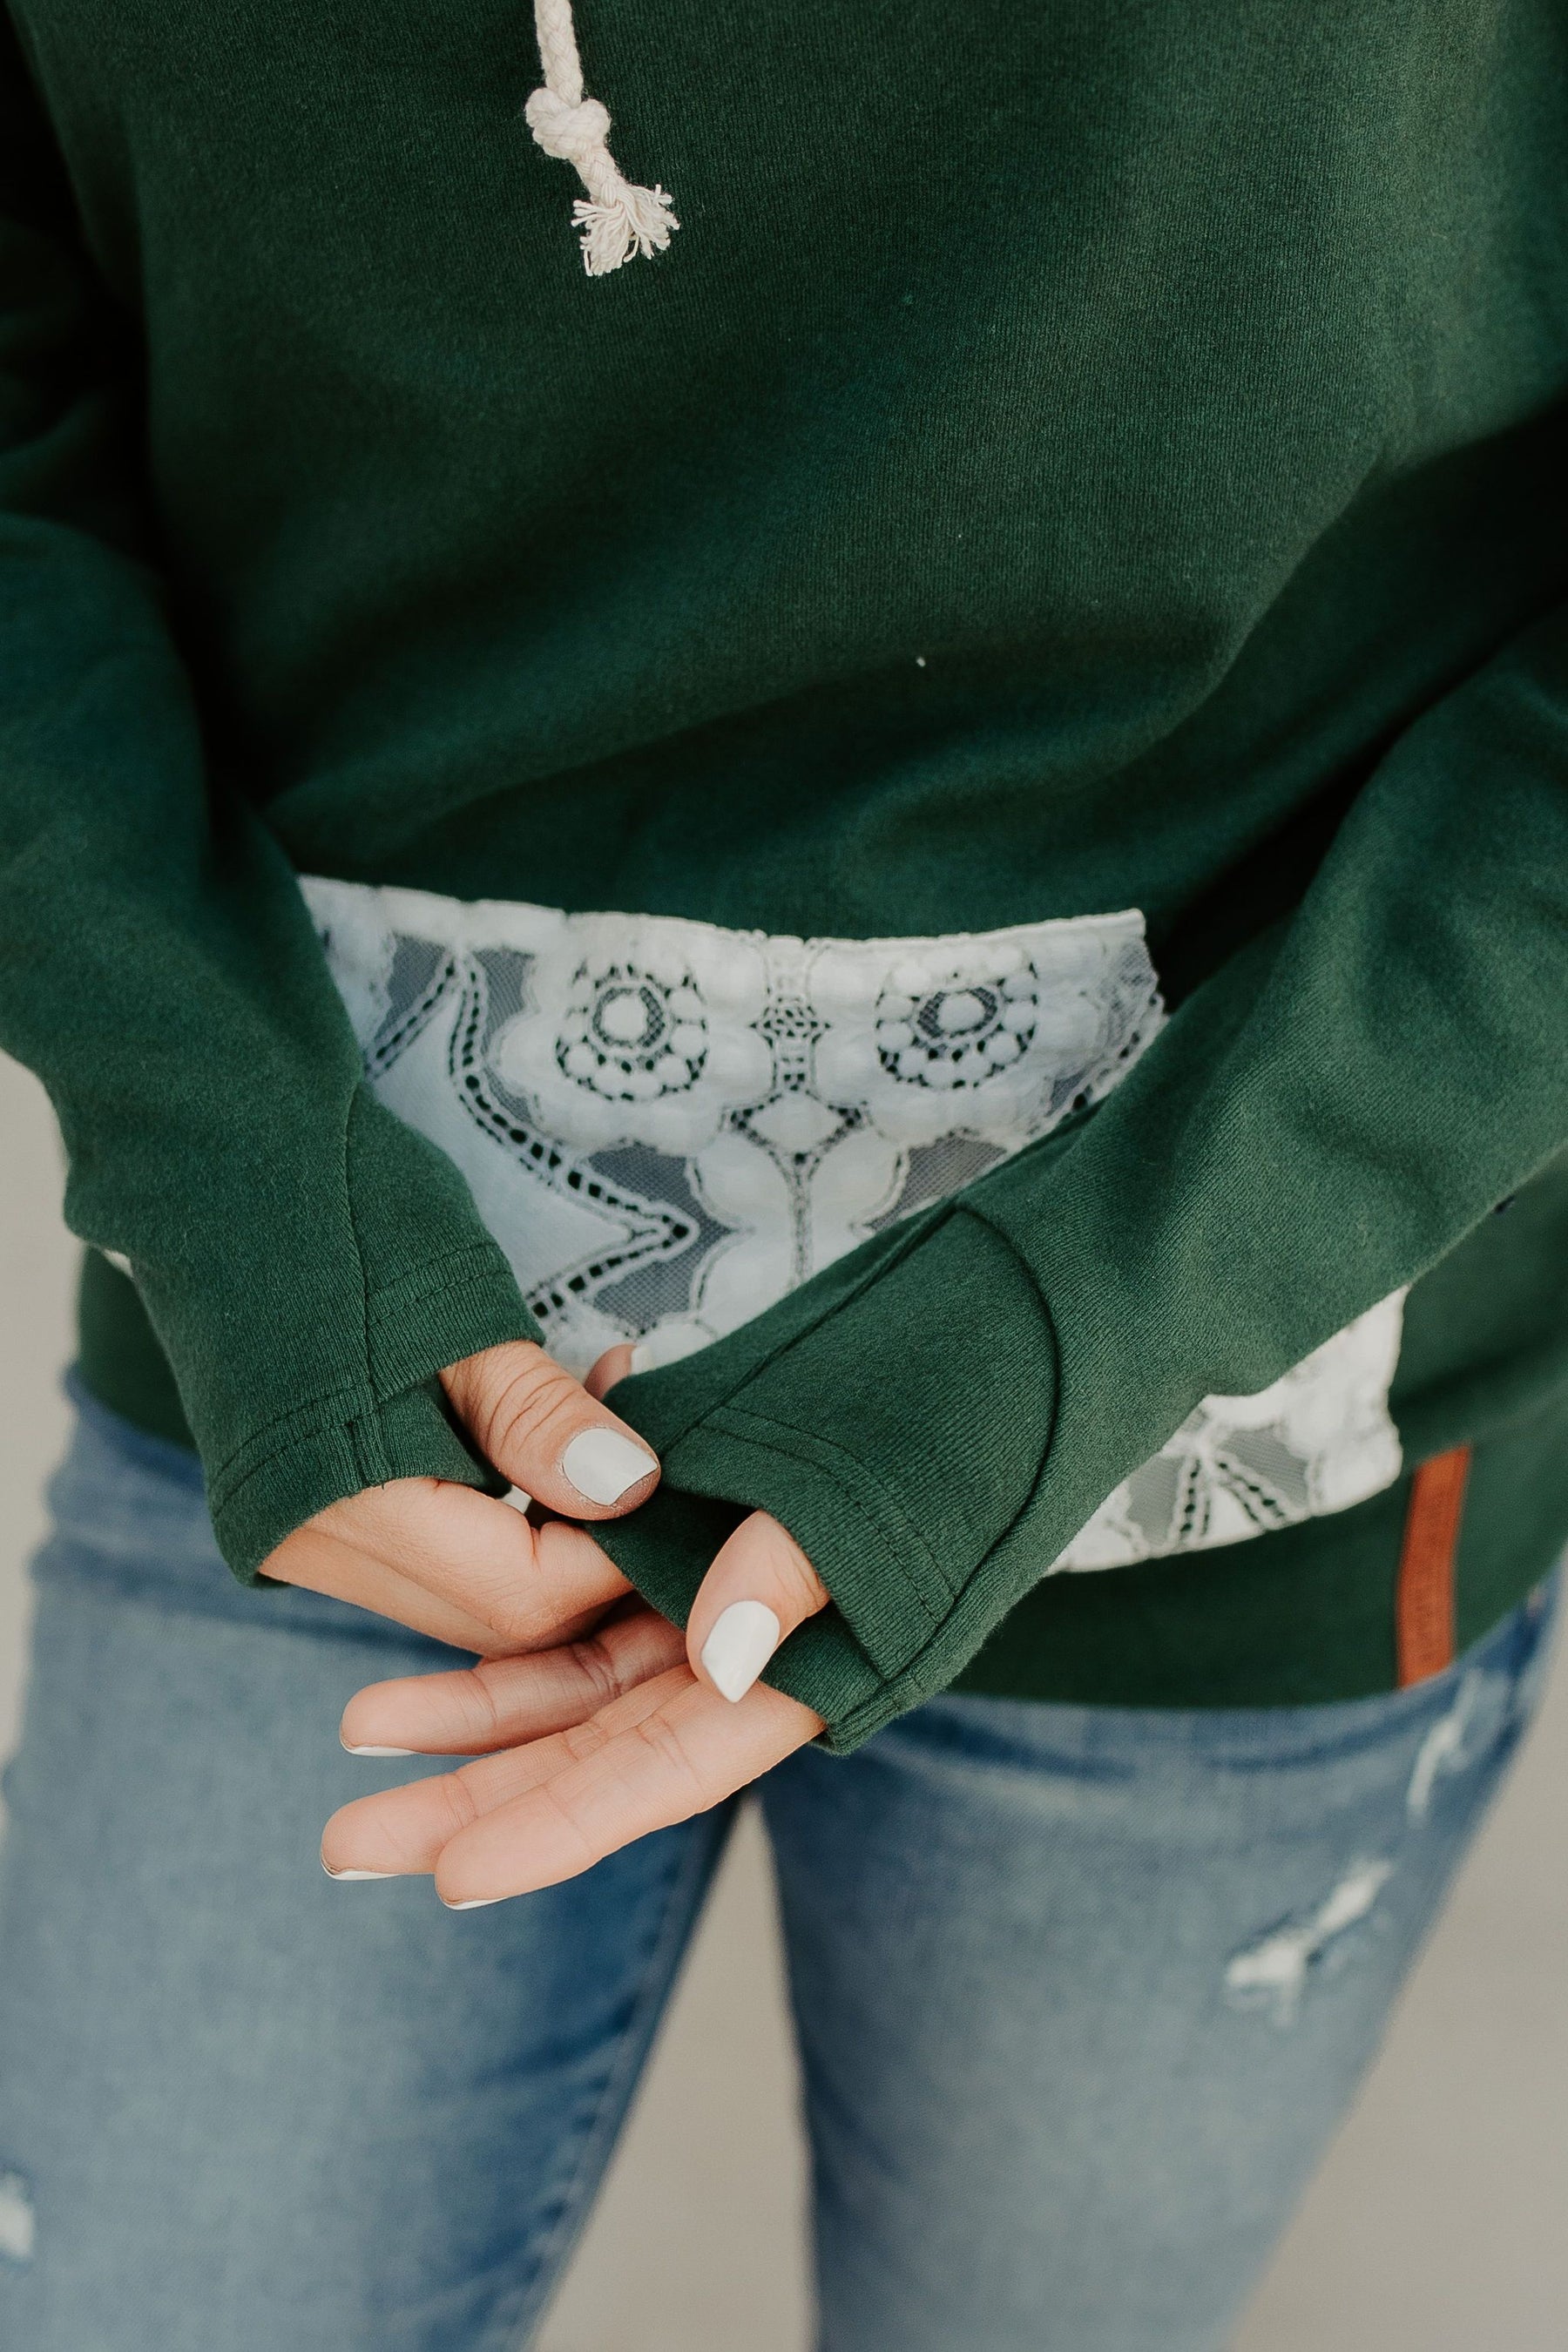 Ampersand Avenue Doublehood™ Sweatshirt - Lovely Lace Evergreen